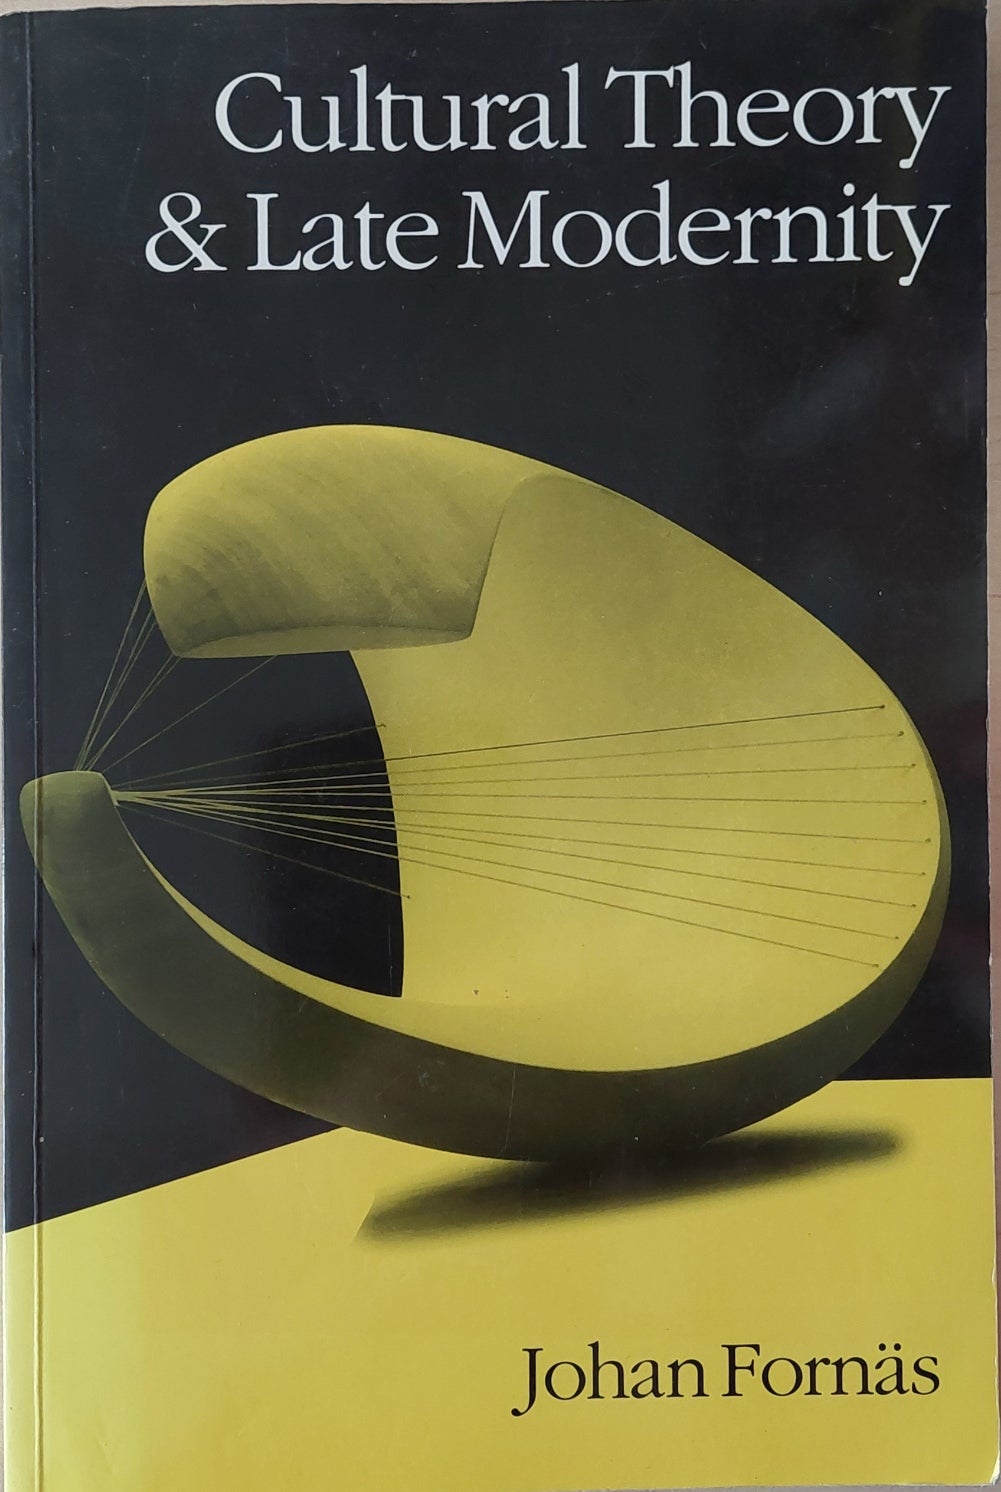 Cultural Theory and late modernity, Johan Fornæs, år 1995